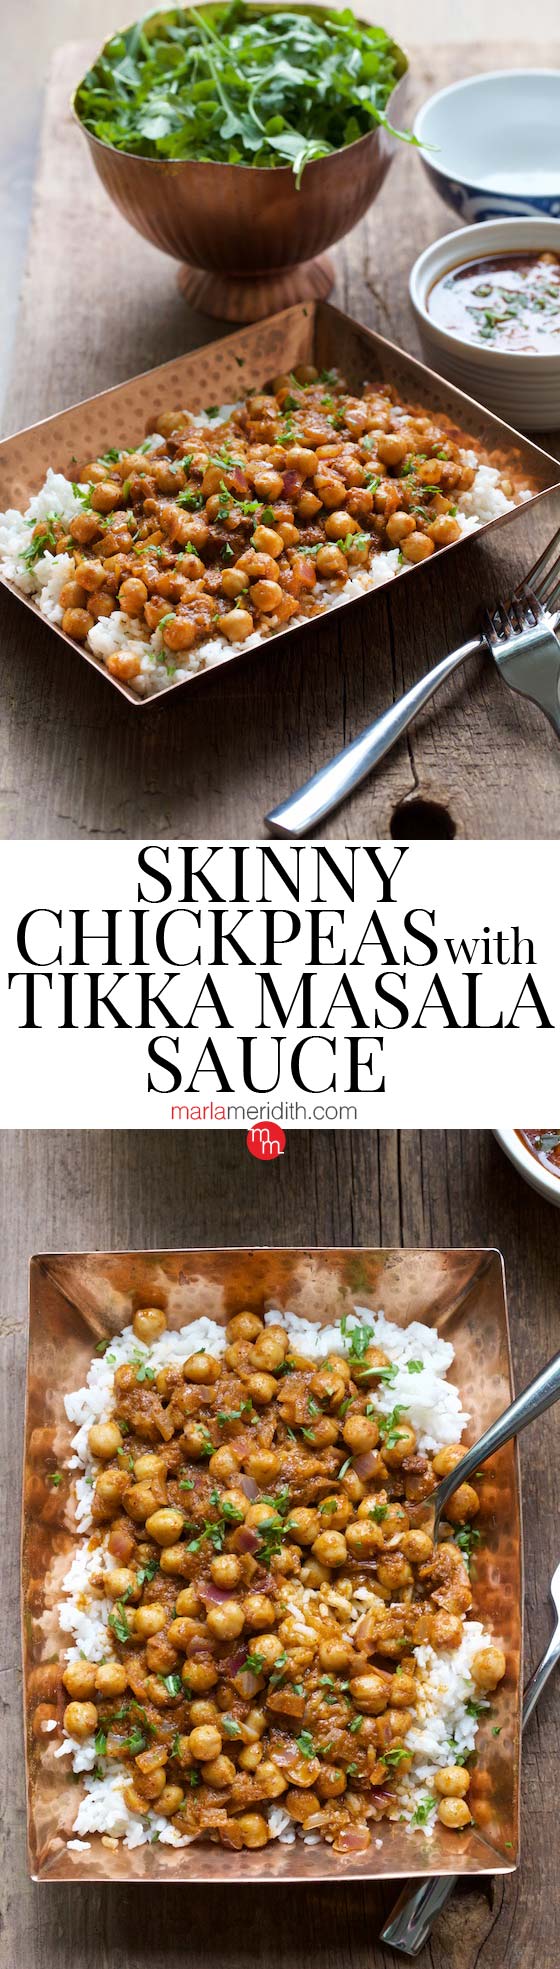 chickpeas, vegetarian, recipe, healthy, skinny, diet, garbanzo beans, Indian food